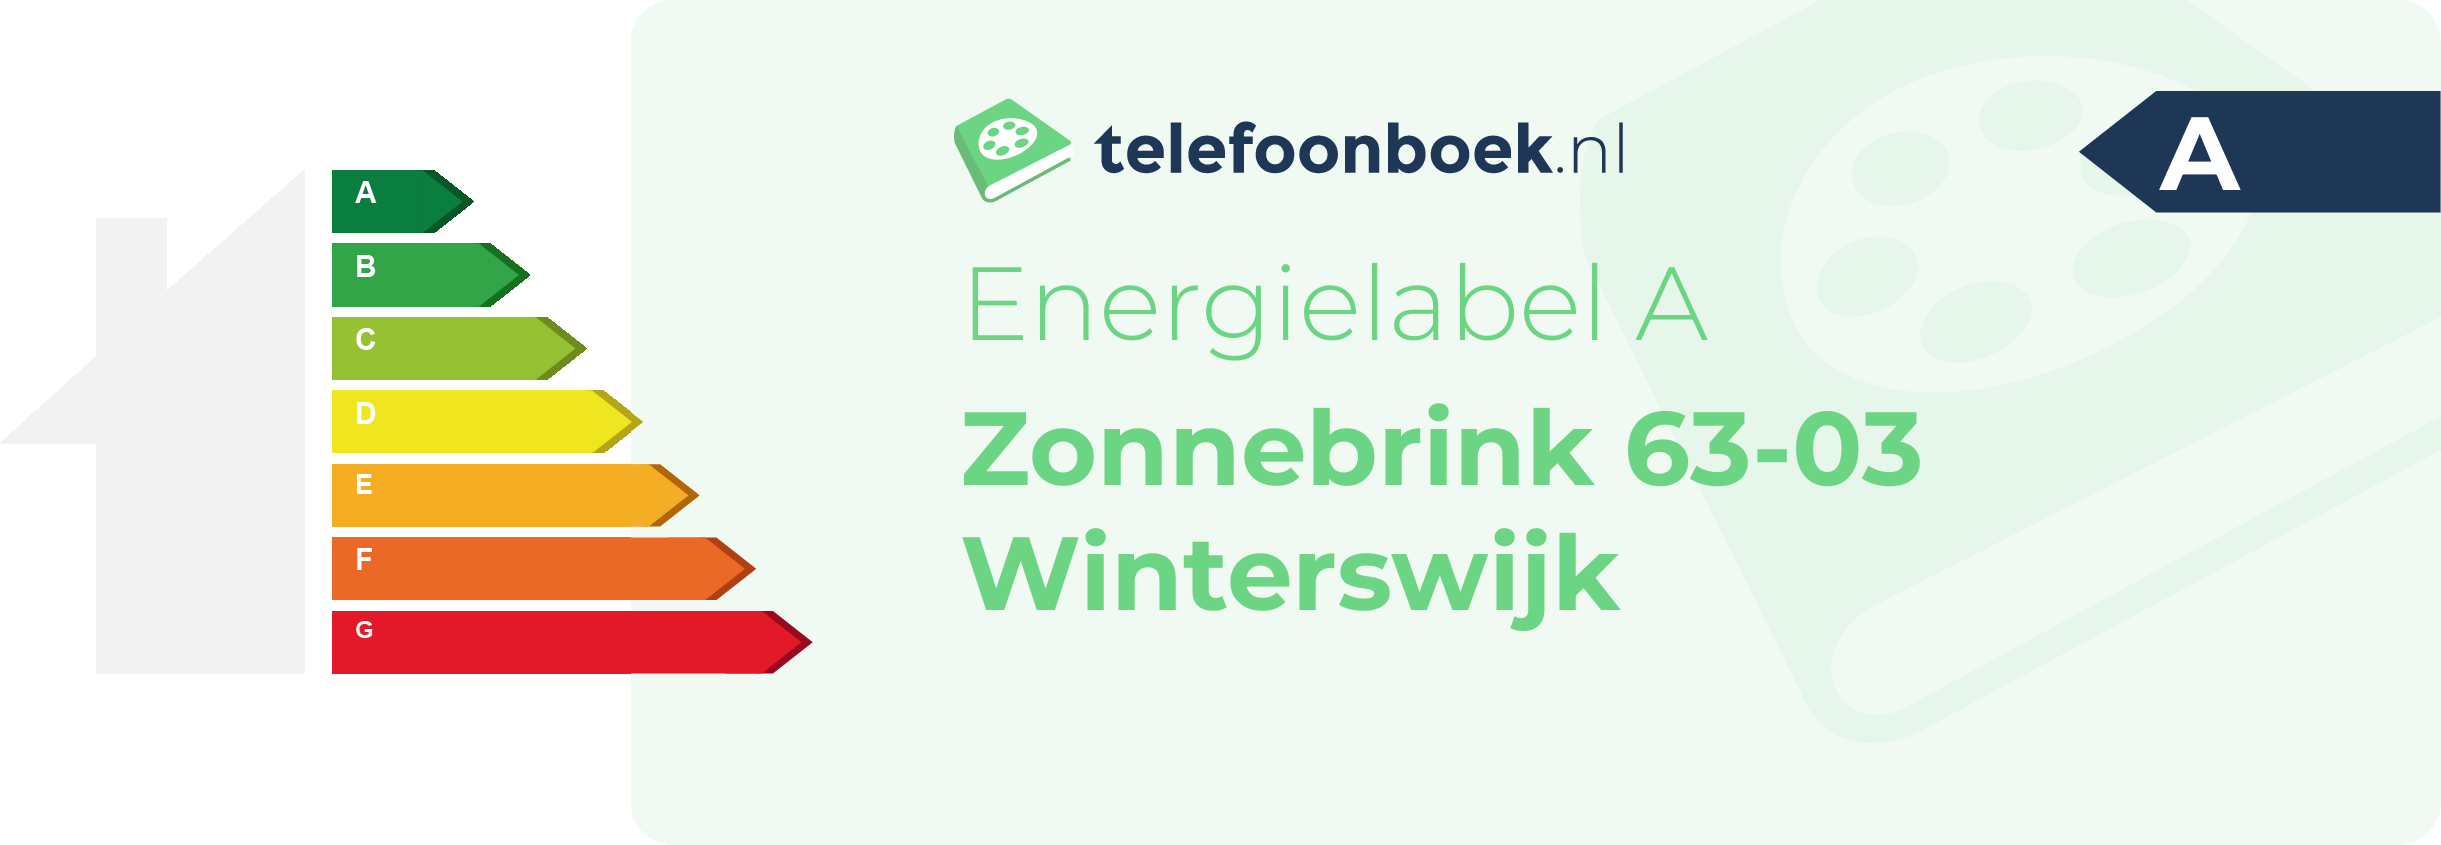 Energielabel Zonnebrink 63-03 Winterswijk